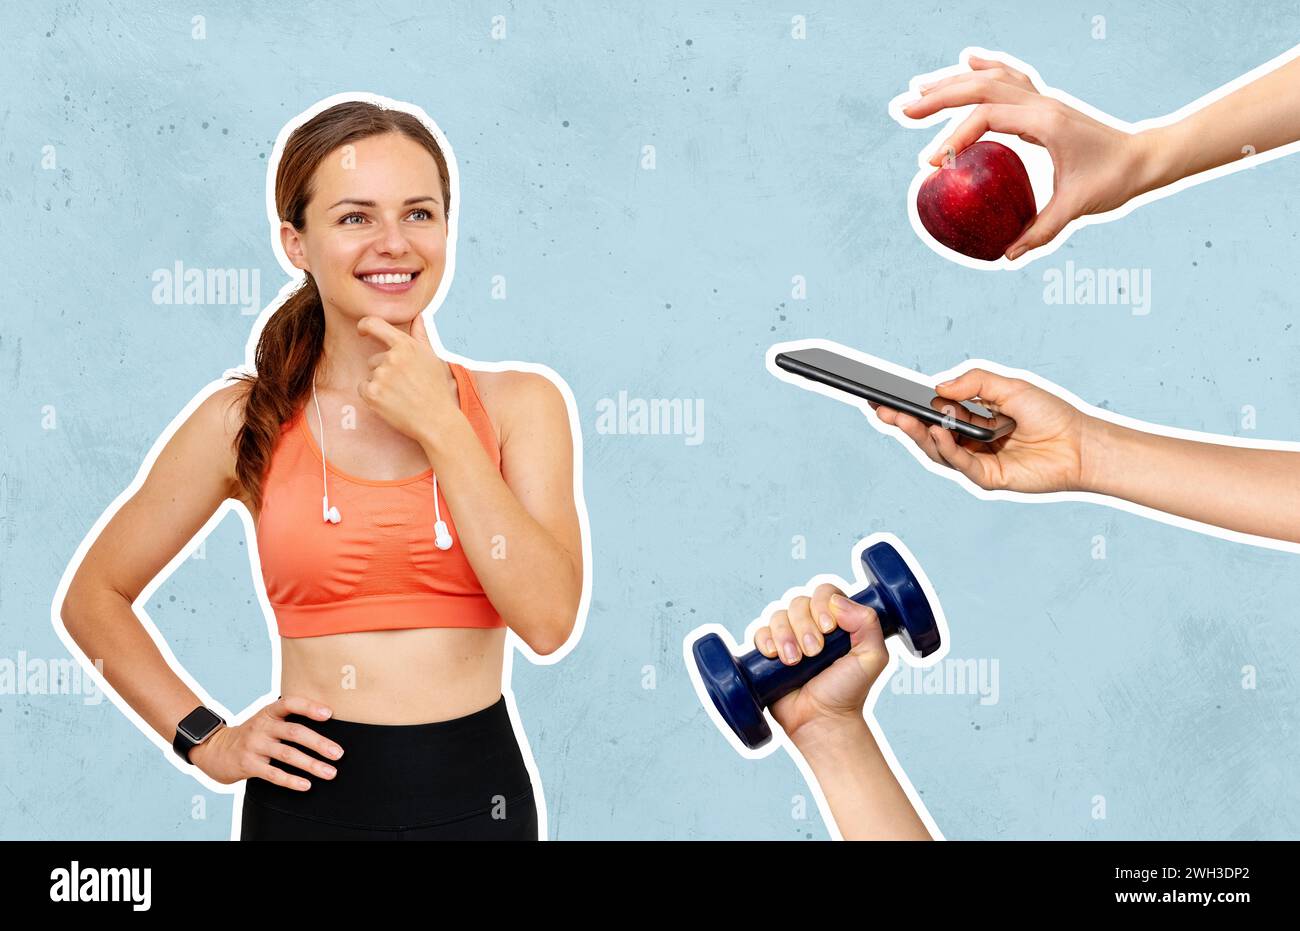 Konzeptionelle Hintergründe für mobile Sportanwendungen, Sporternährung und Workouts. Weibliche Athletin und Handy, roter Apfel und Hantel in der Hand. Stockfoto